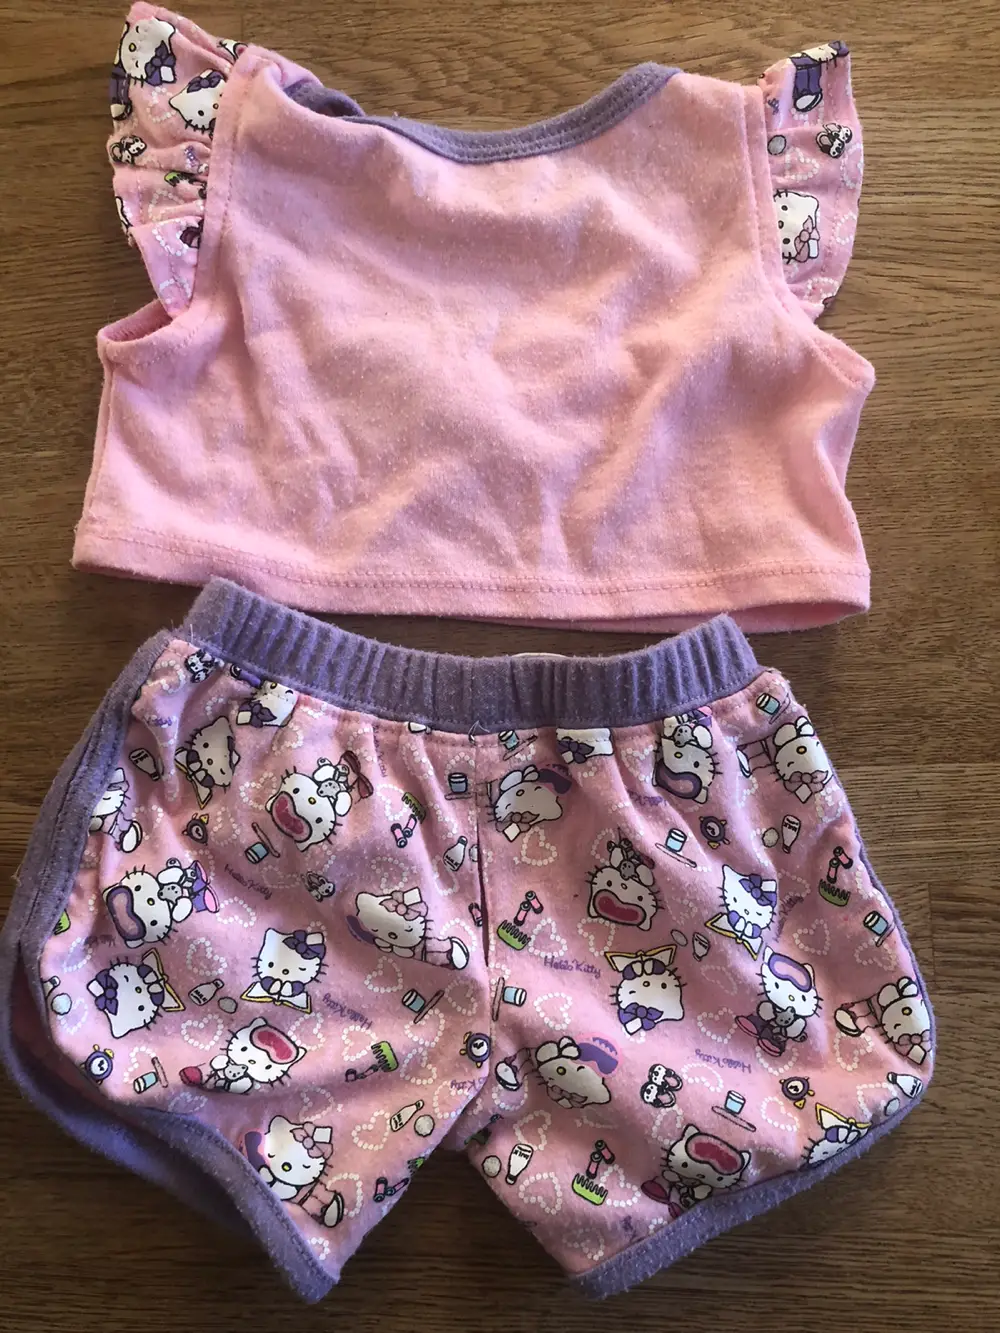 Passiv Autonomi lustre Køb Build-A-Bear Tøj af Sara på Reshopper · Shop secondhand til børn, mor  og bolig